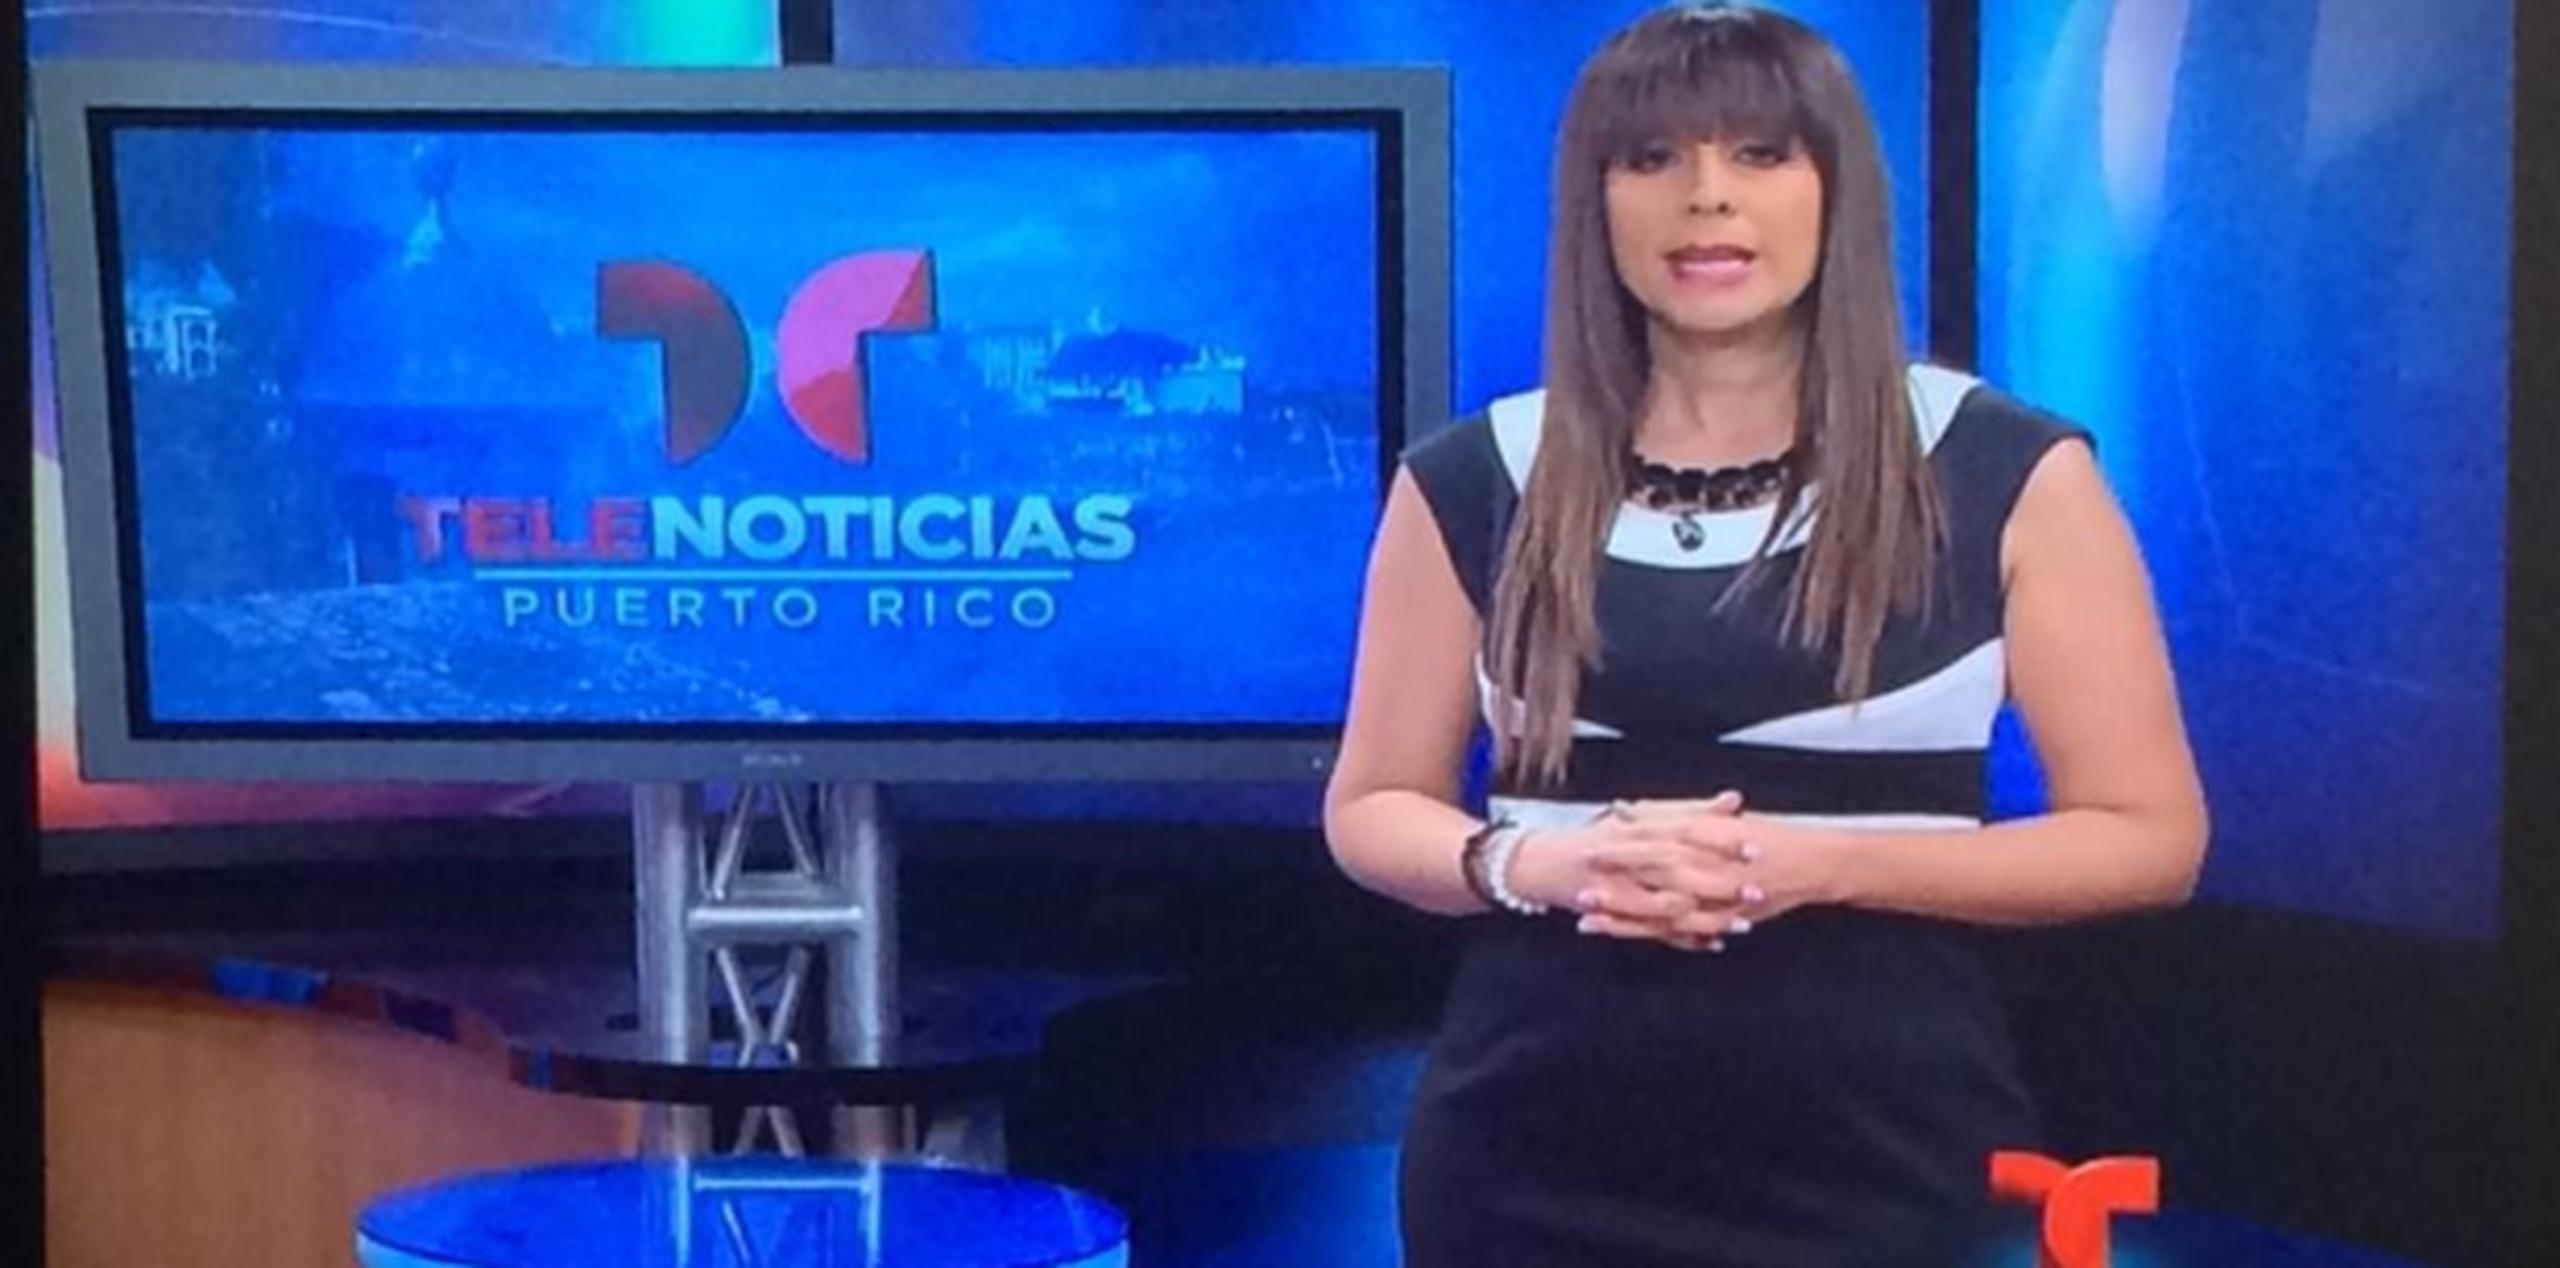 La periodista Haydeé Rosario se visualiza como presentadora de deportes, aunque disfruta desempeñarse en el mundo del entretenimiento. (Suministrada)